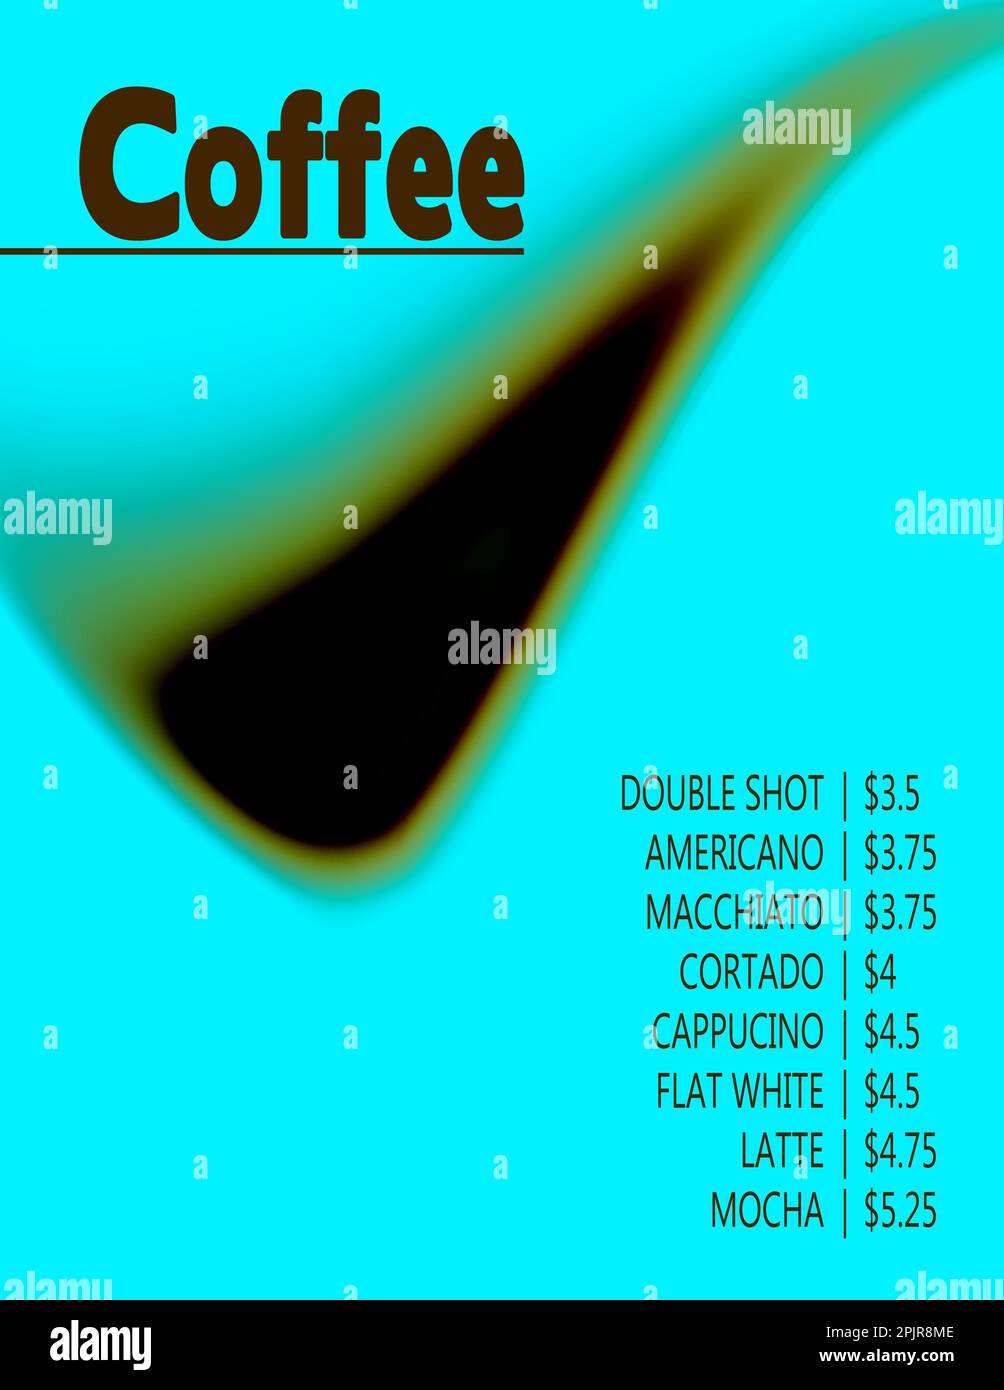 Abstrakter konzeptioneller Hintergrund mit verschwommener Form für ein Kaffeemenü. Vorlage für kreative Vektorgrafiken Stock Vektor